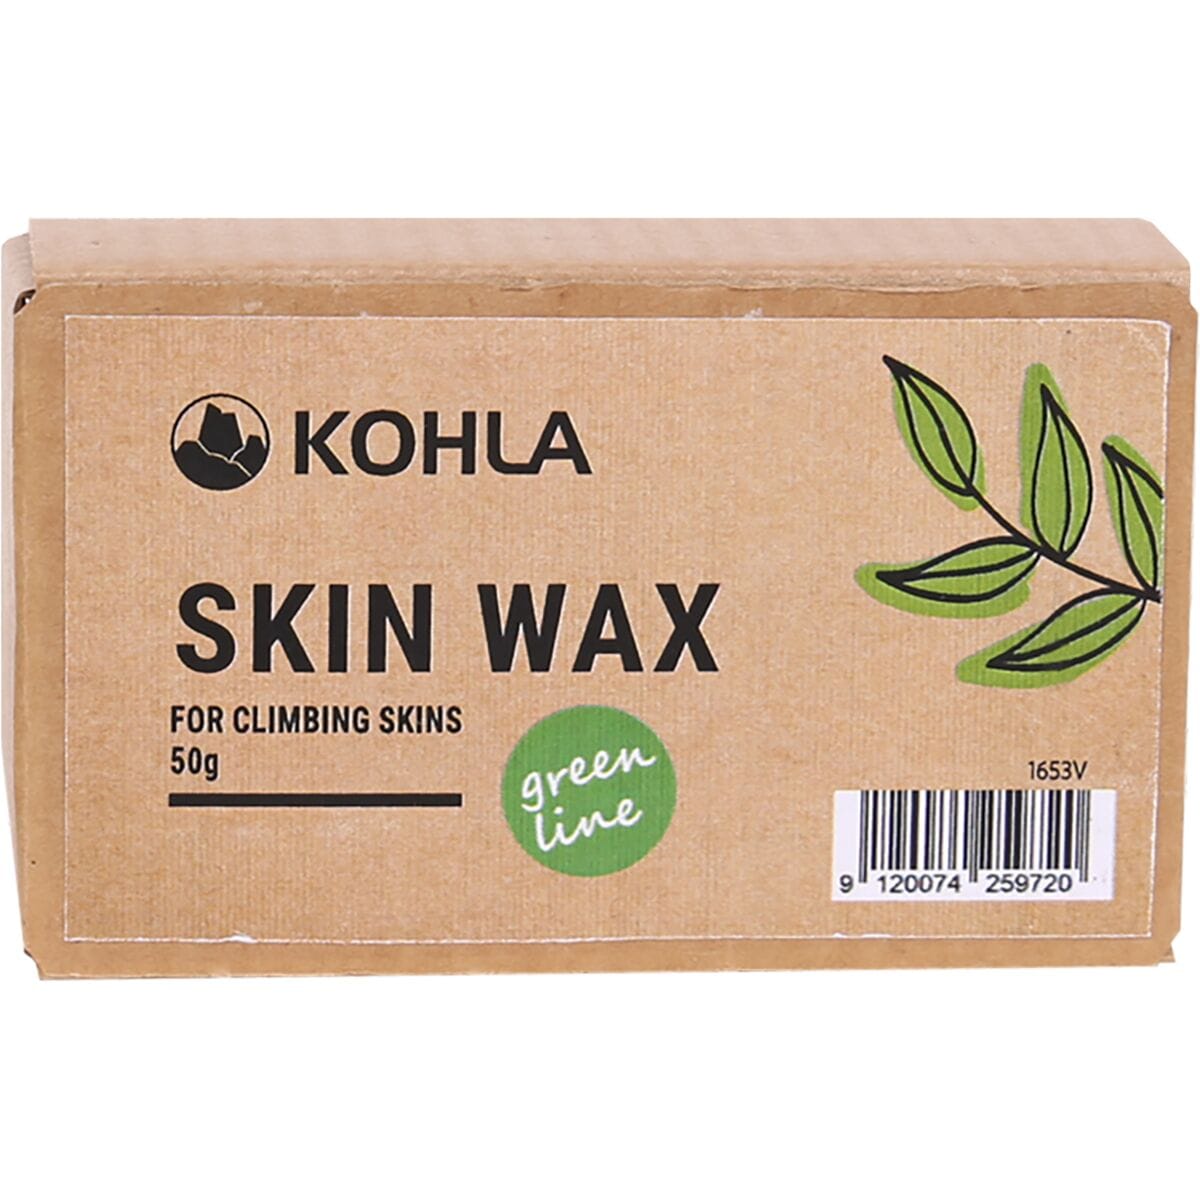 Kohla Skin Wax - Green Line